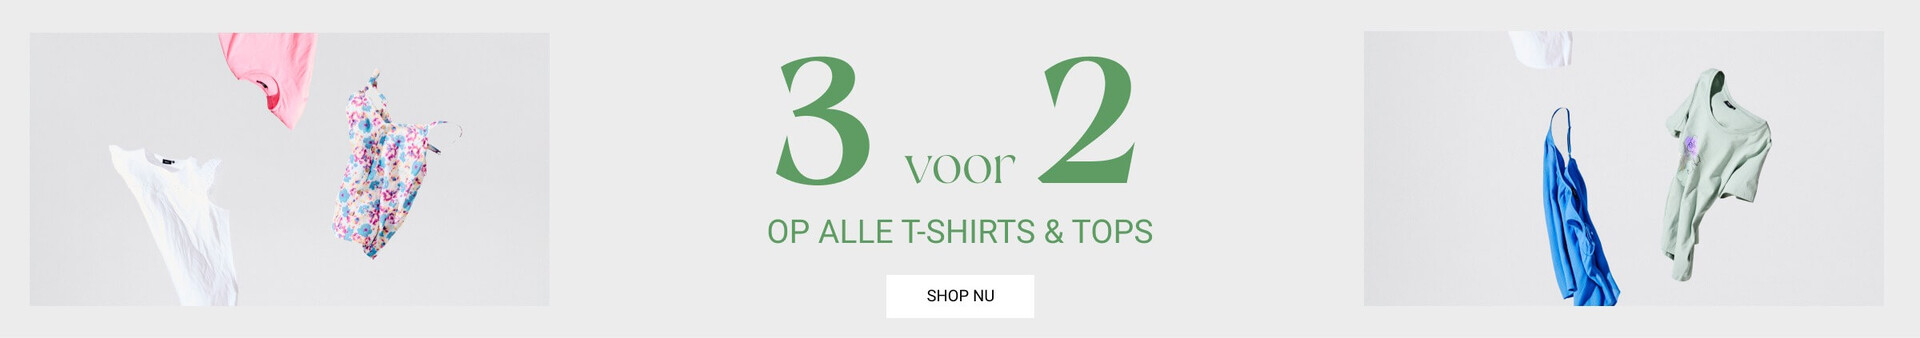 T-shirts & tops in grote maten voor dames - Maat 42-64 - Zizzi